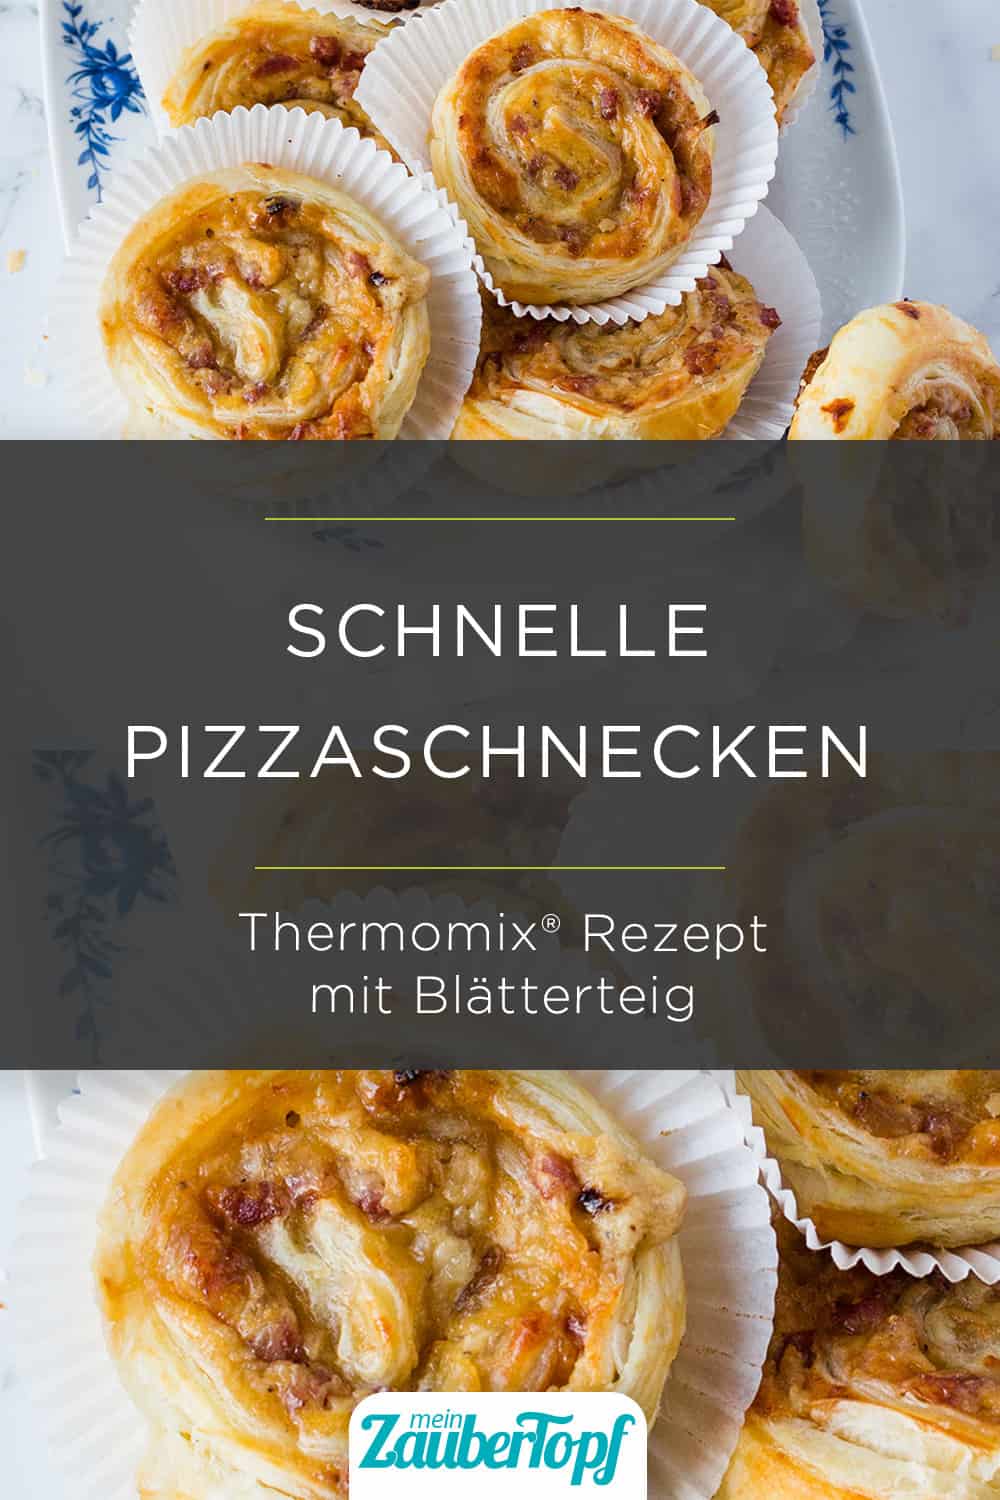 Pizzaschnecken mit Blätterteig - Foto: Bosch/Désirée Peikert